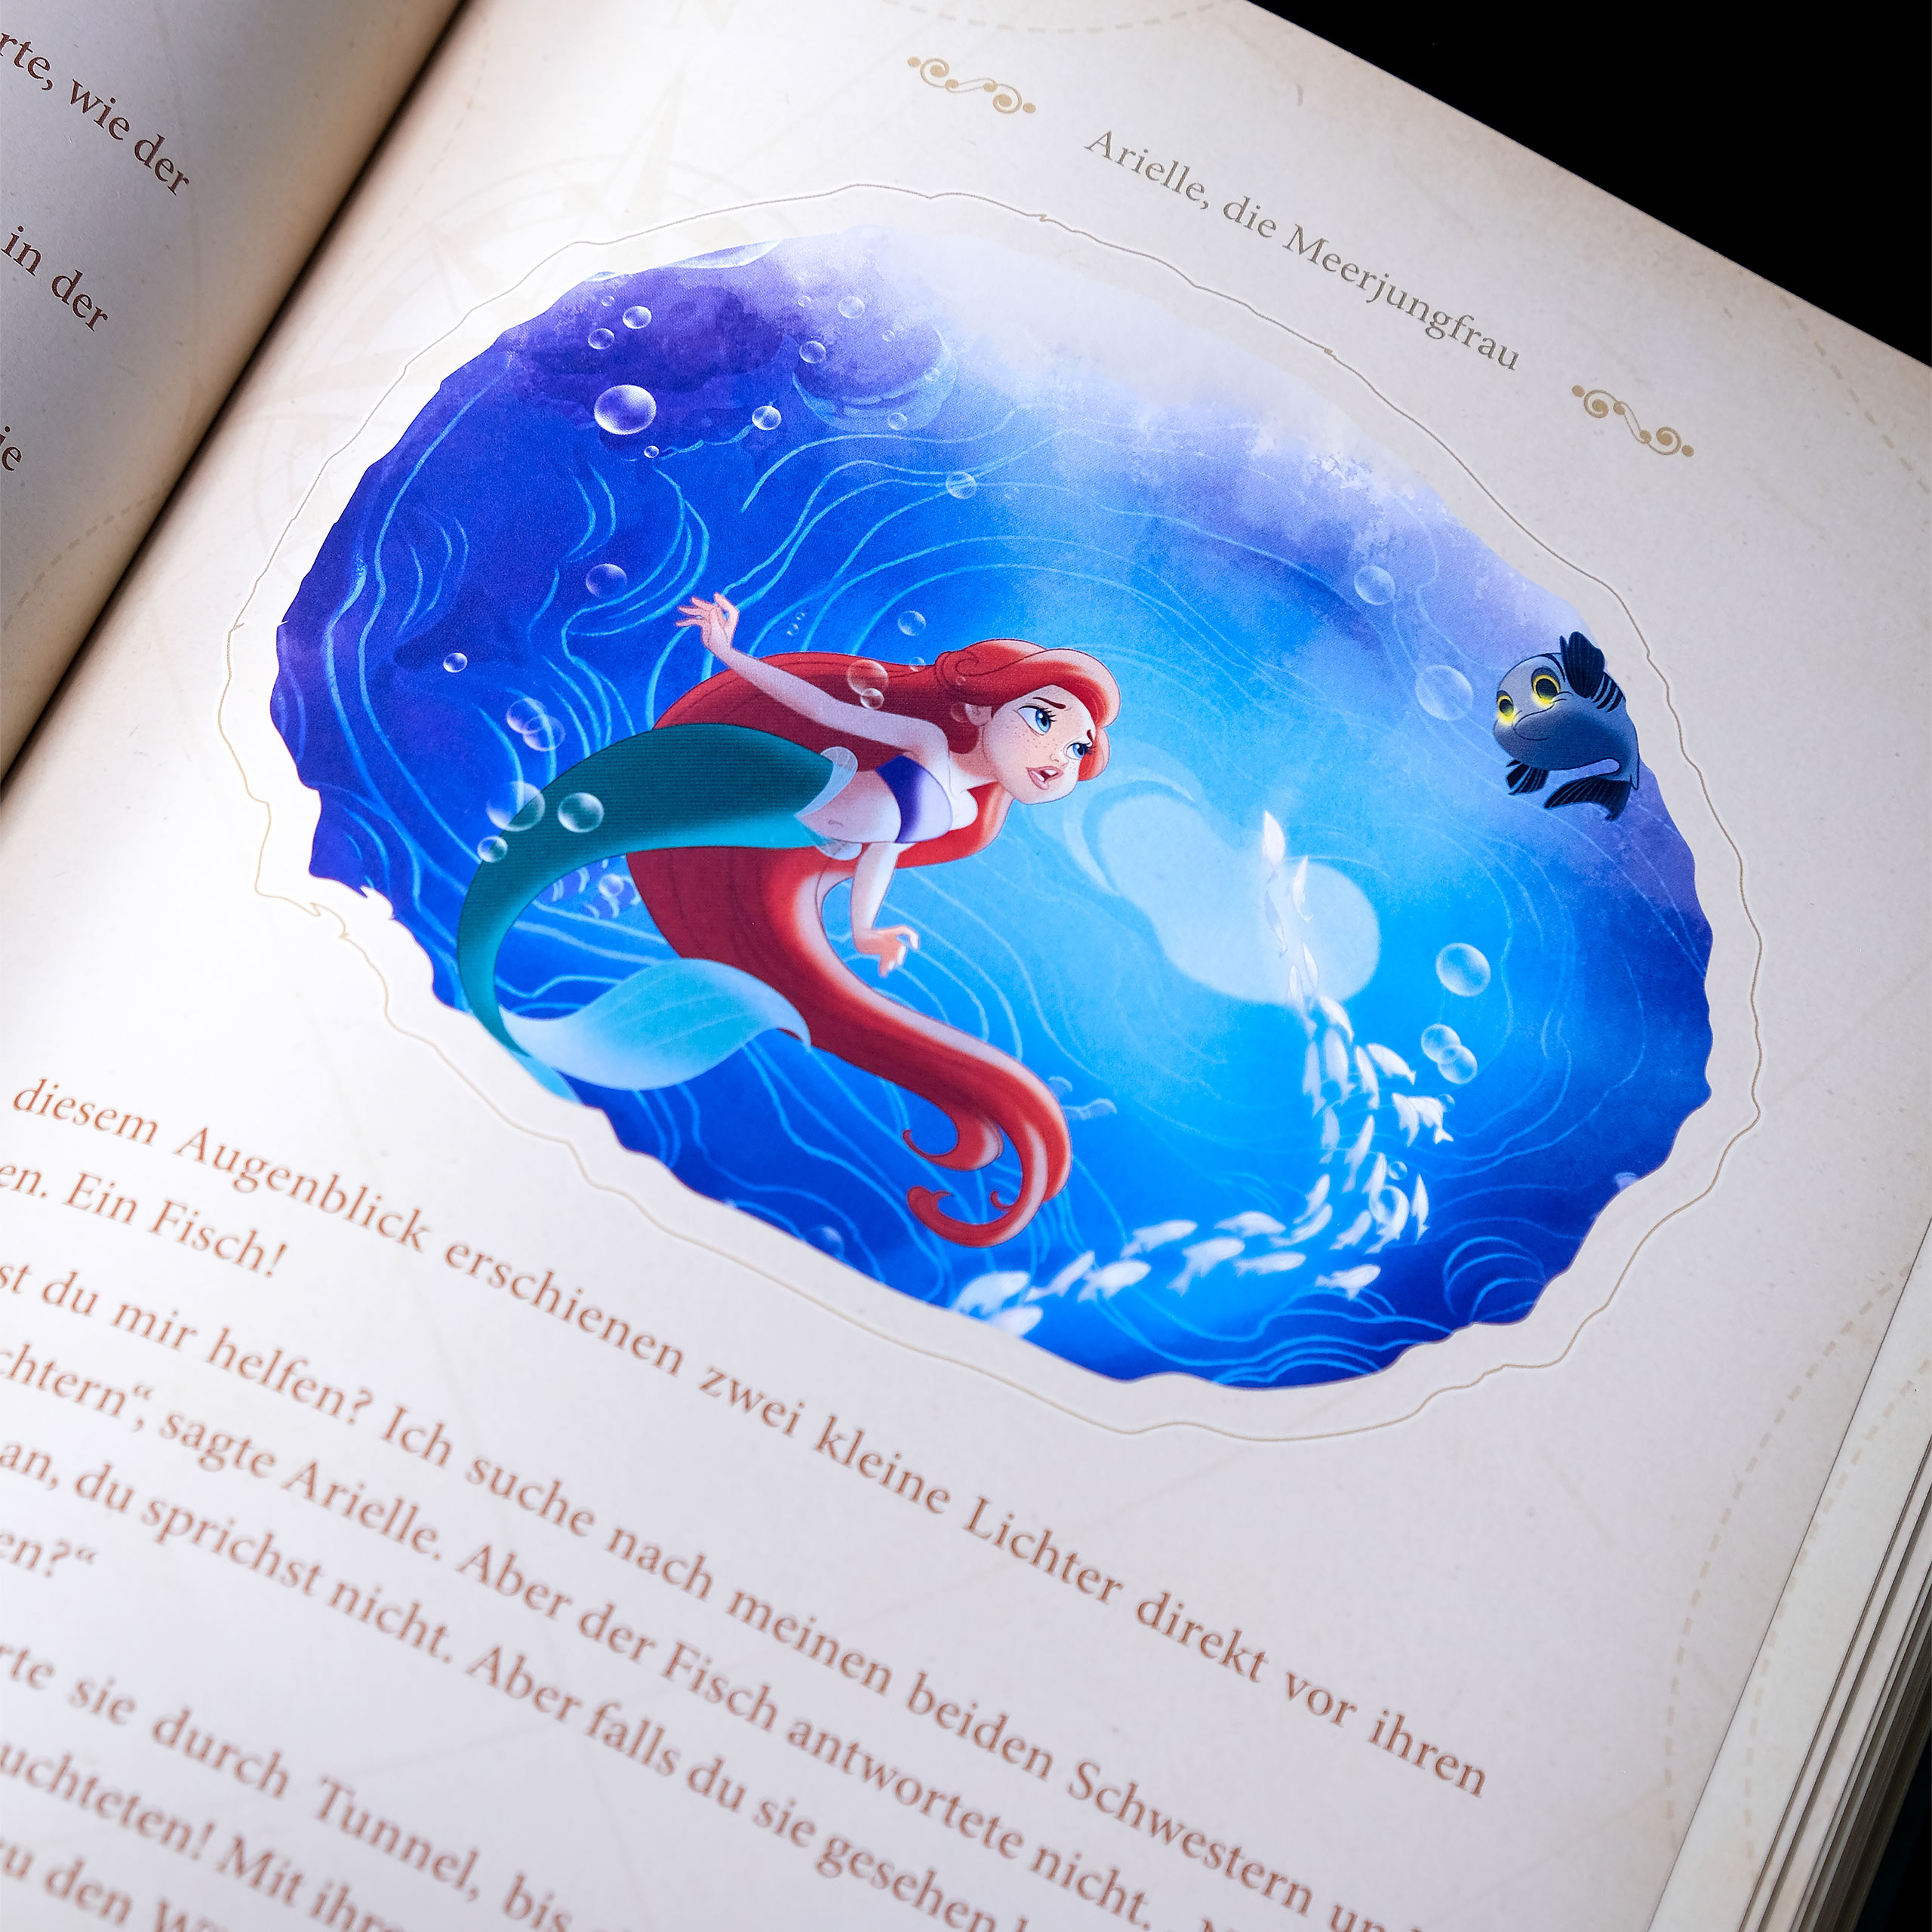 Disney - The Big Golden Book of Adventure Stories